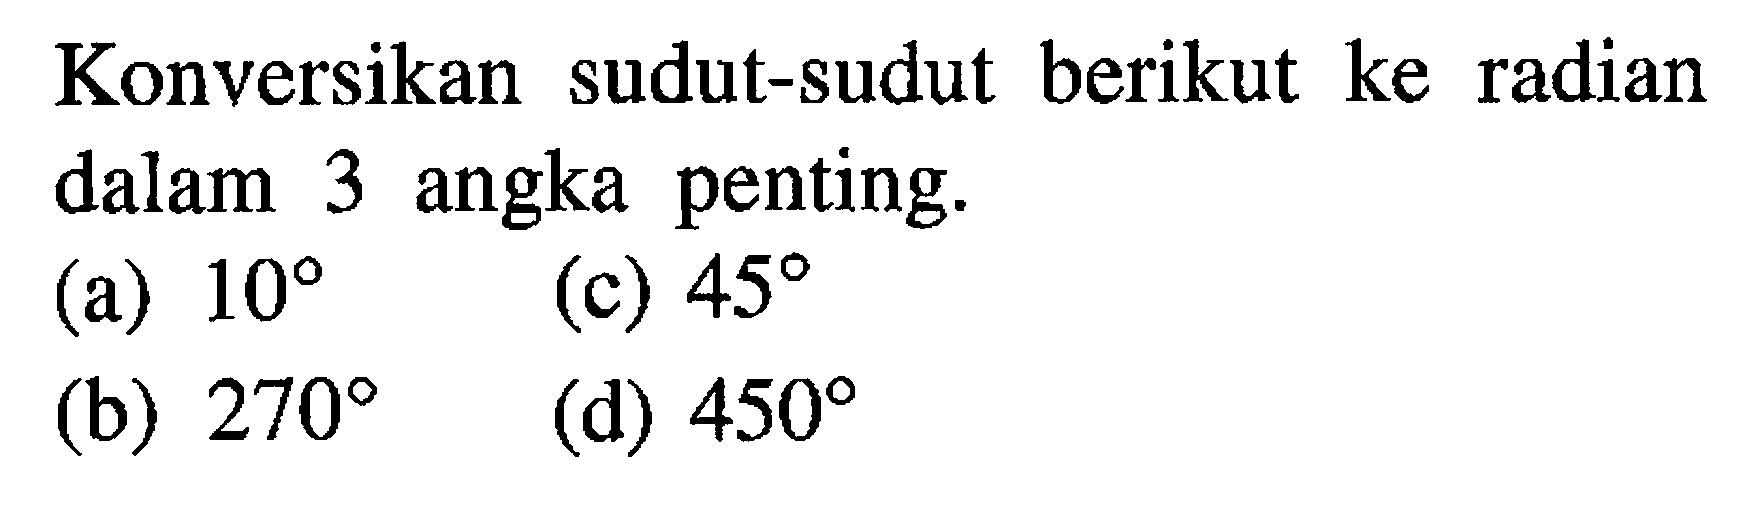 Konversikan sudut-sudut berikut ke radian dalam 3 angka penting. (a) 10 (b) 270 (c) 45 (d) 450